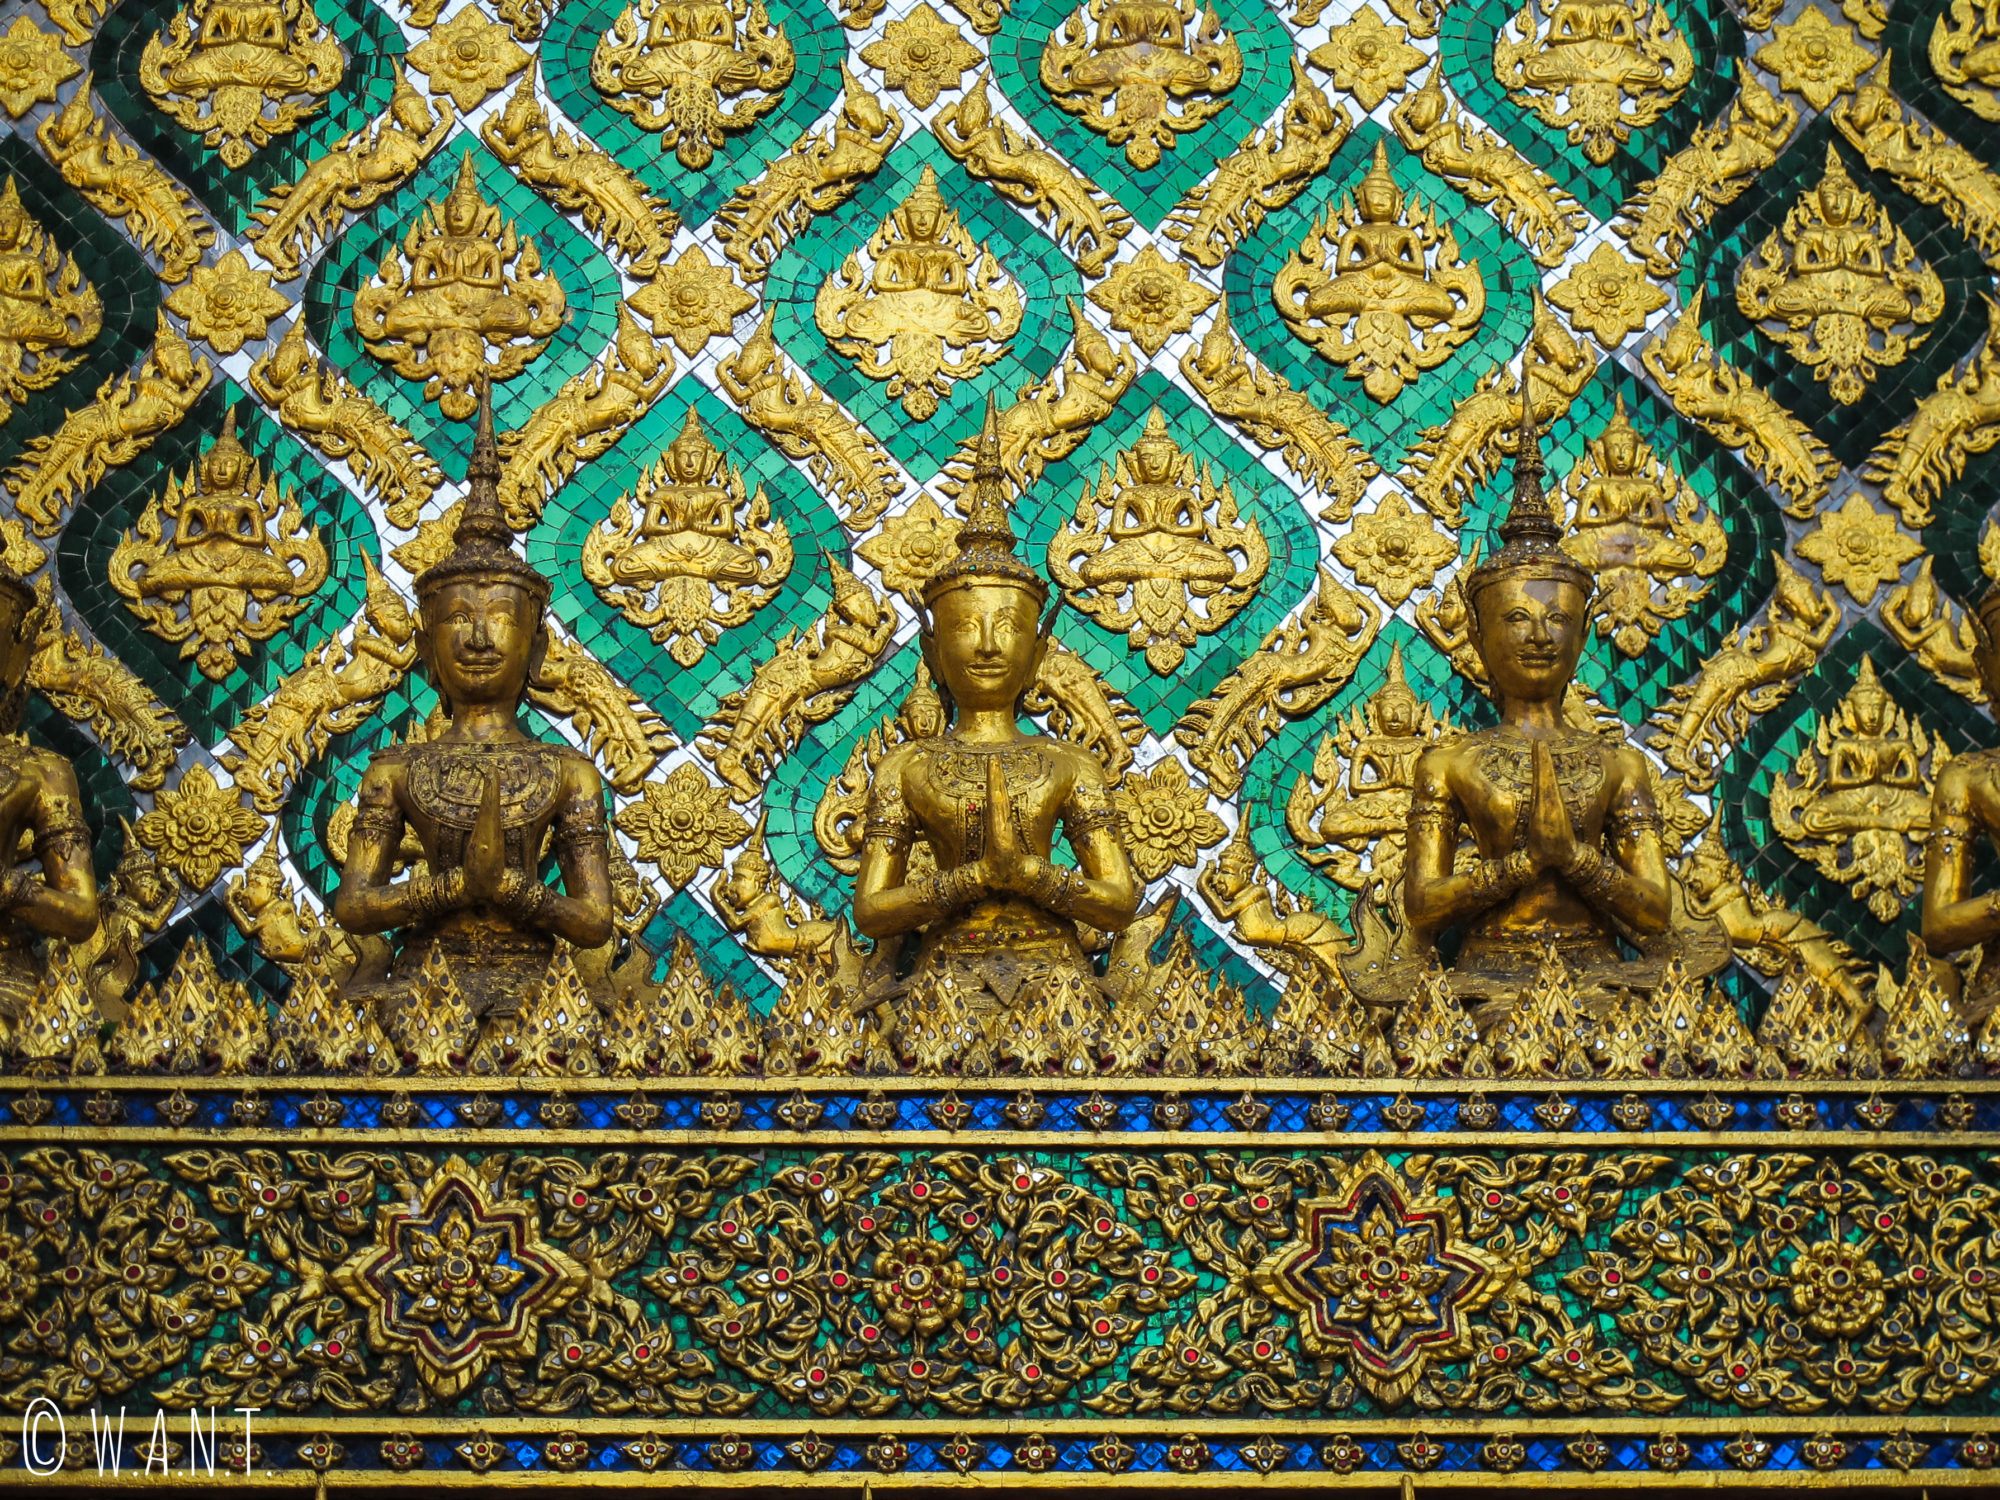 Les ornements sont très largement composés de dorure sur les bâtiments du Palais Royal de Bangkok